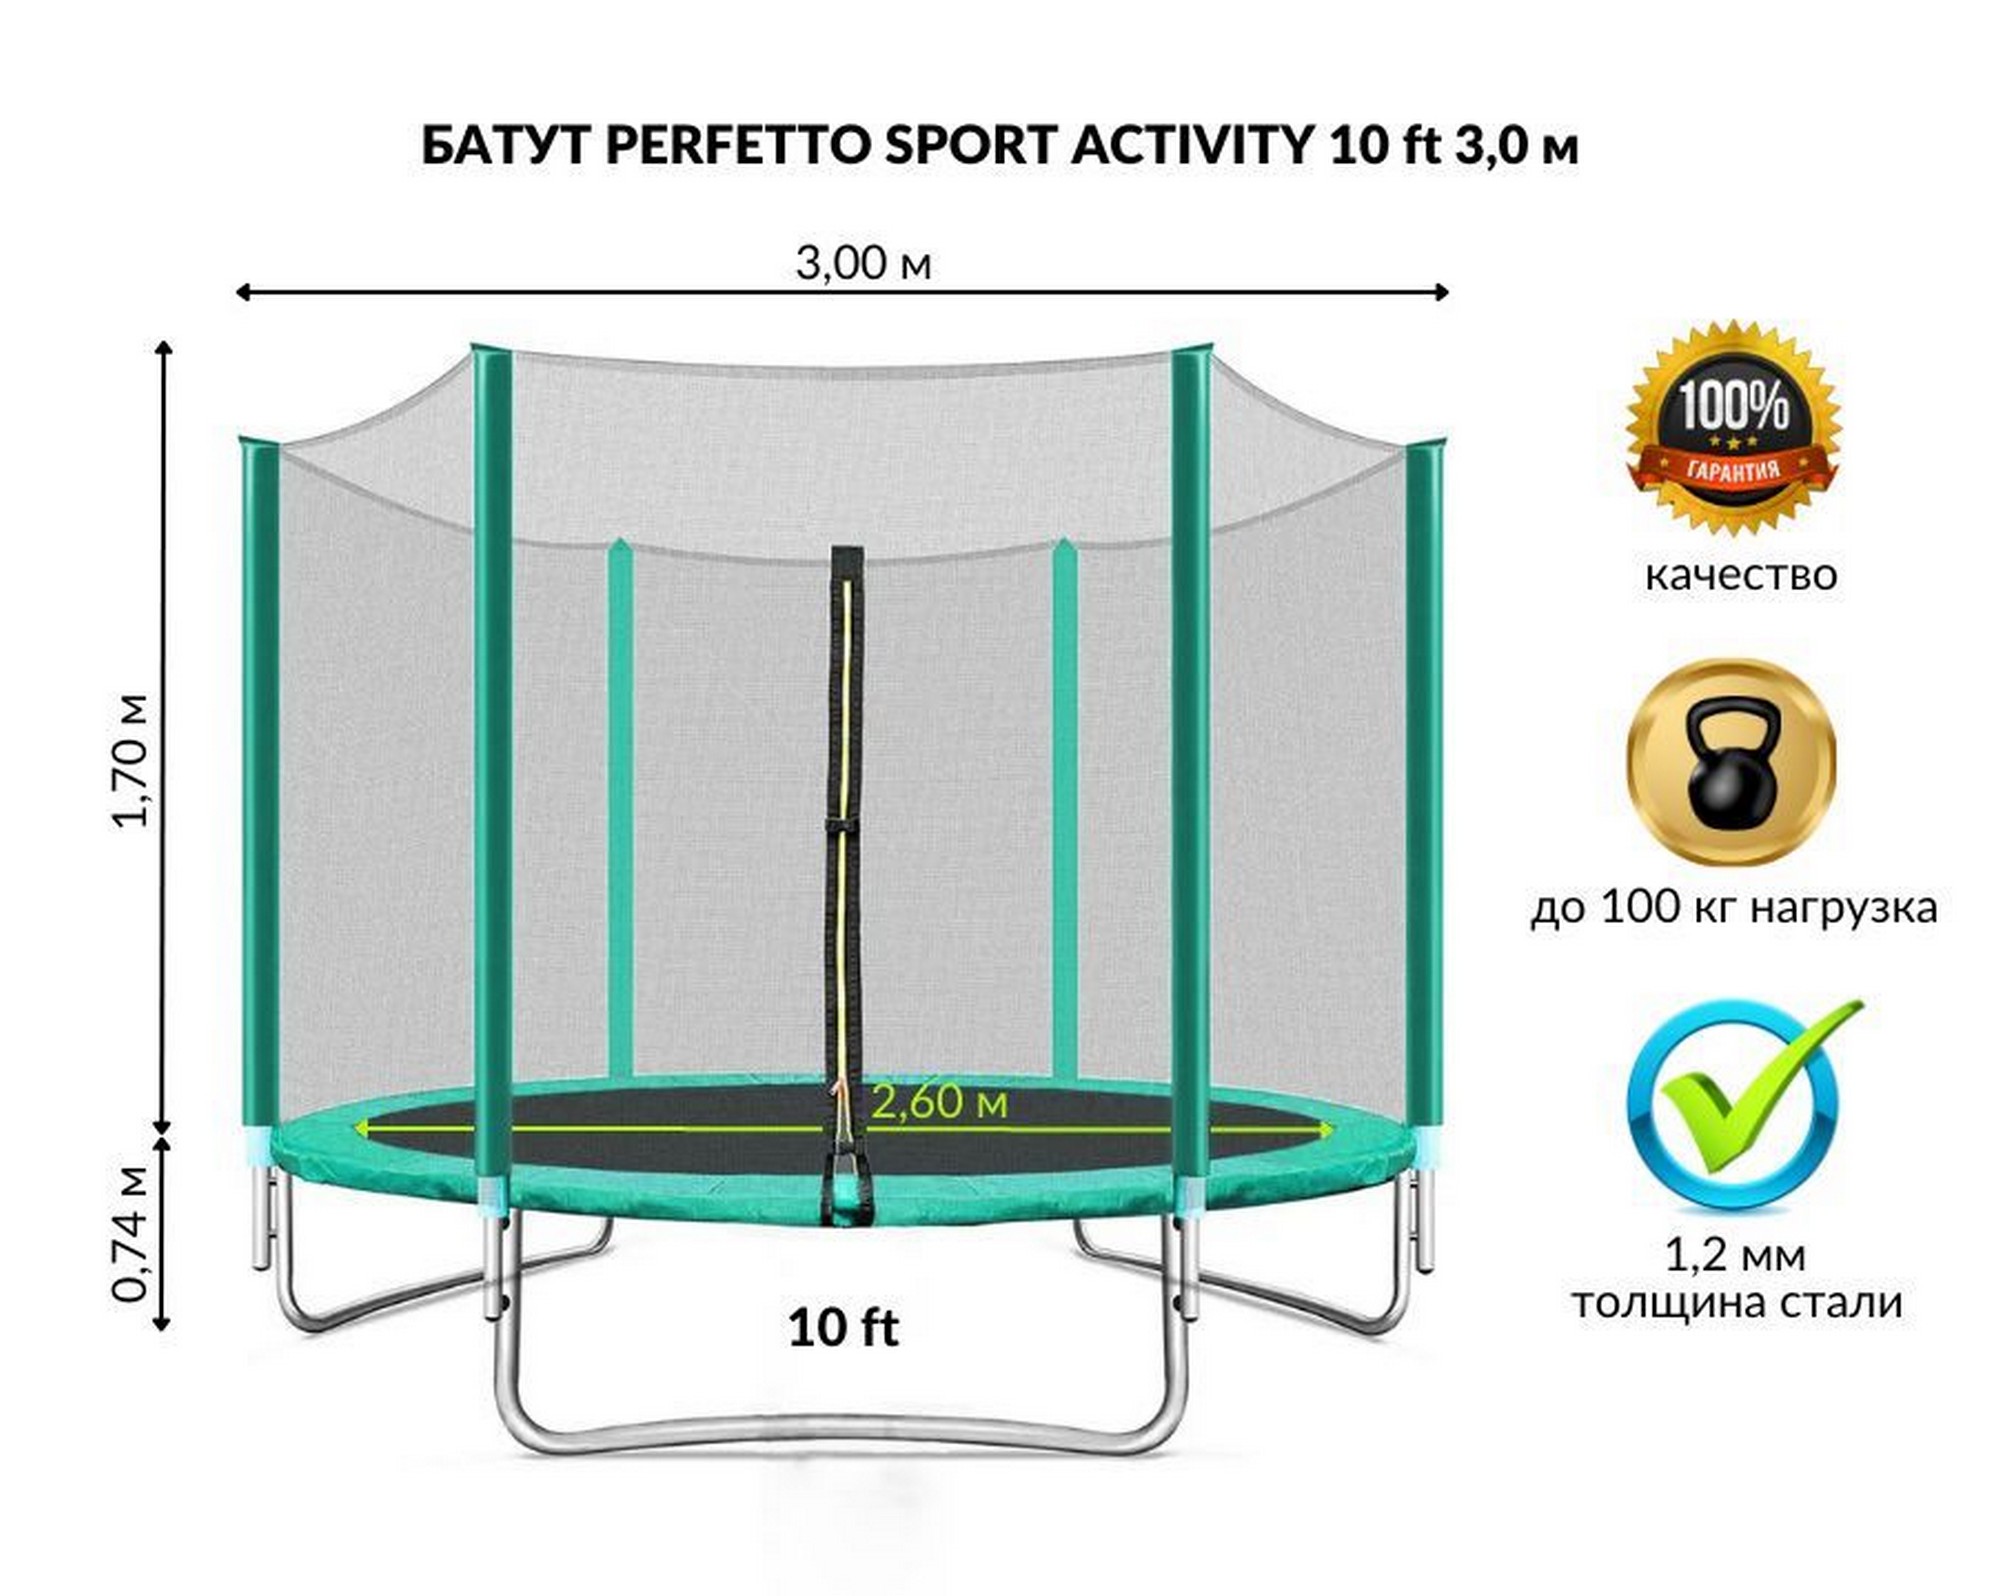 Батут с защитной cеткой Perfetto Sport Activity 10", d300см, зеленый 2000_1596